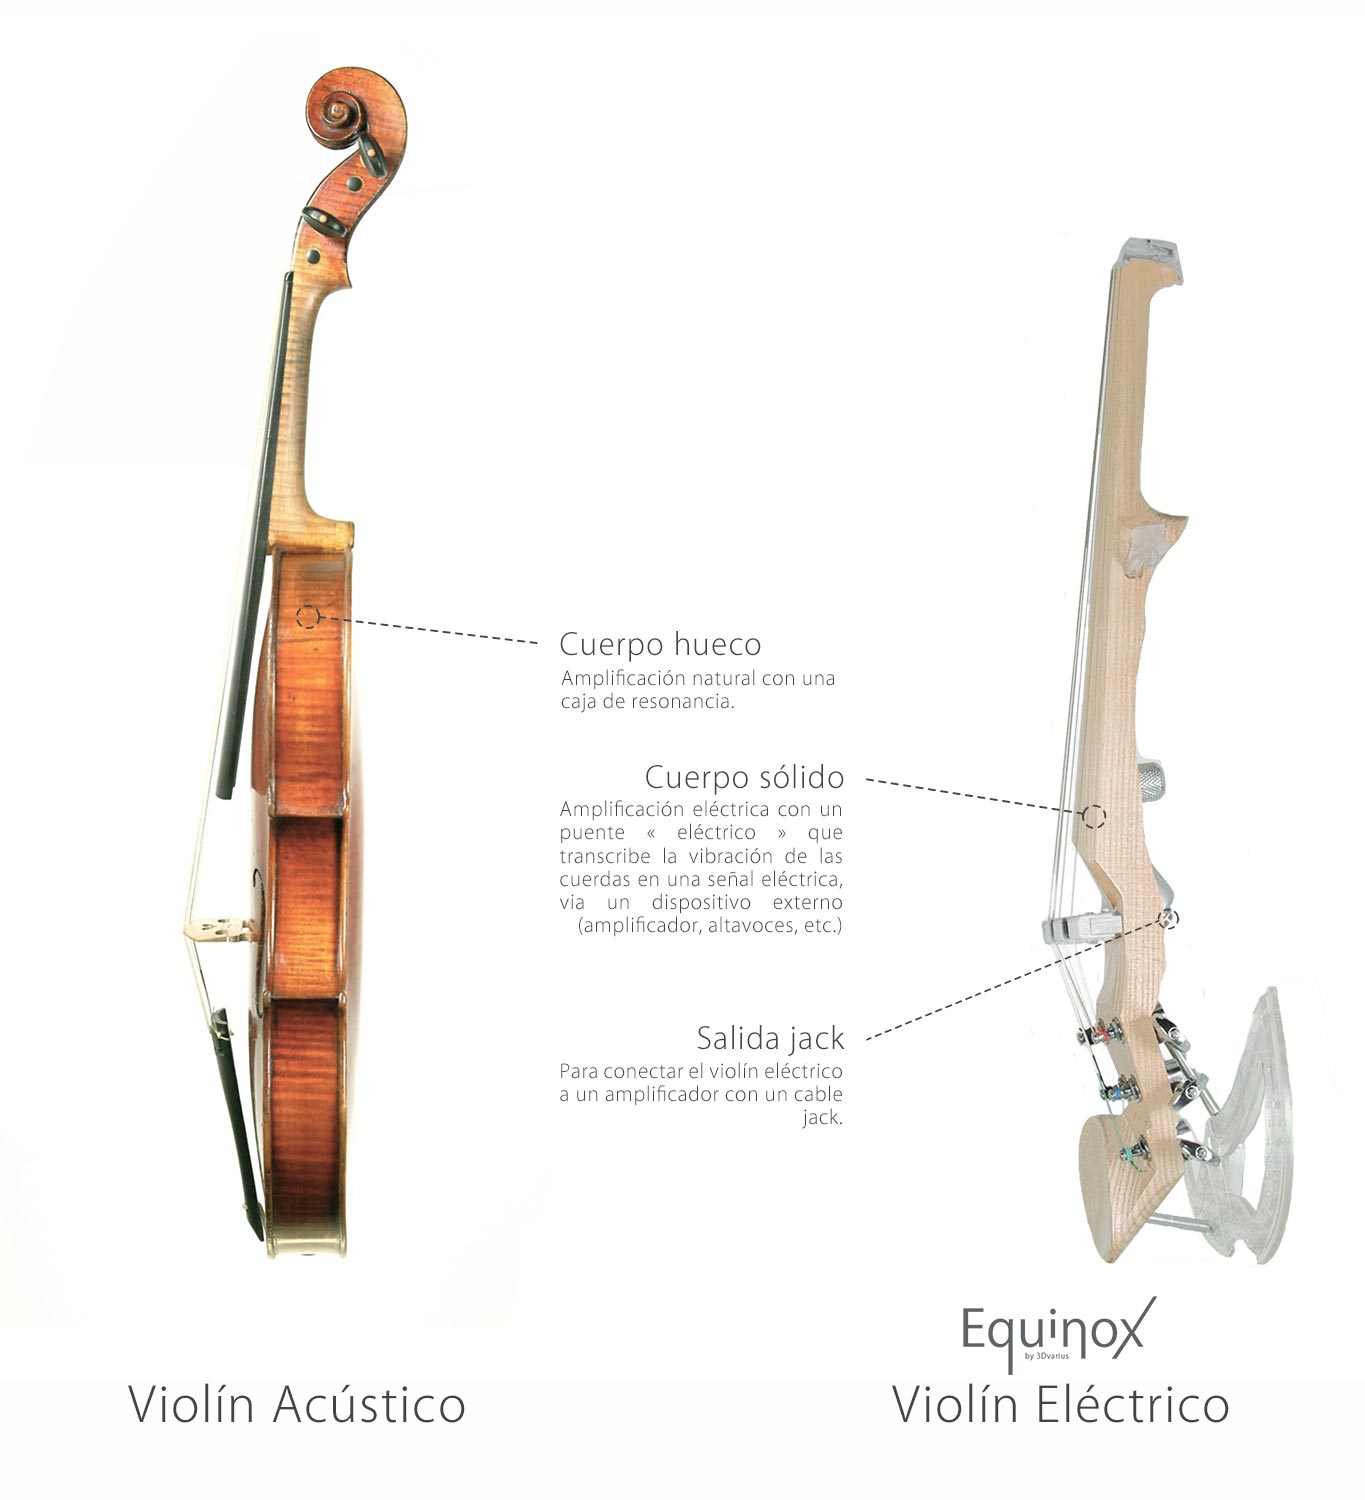 Cuáles son las diferencias entre un acústico un violín eléctrico?